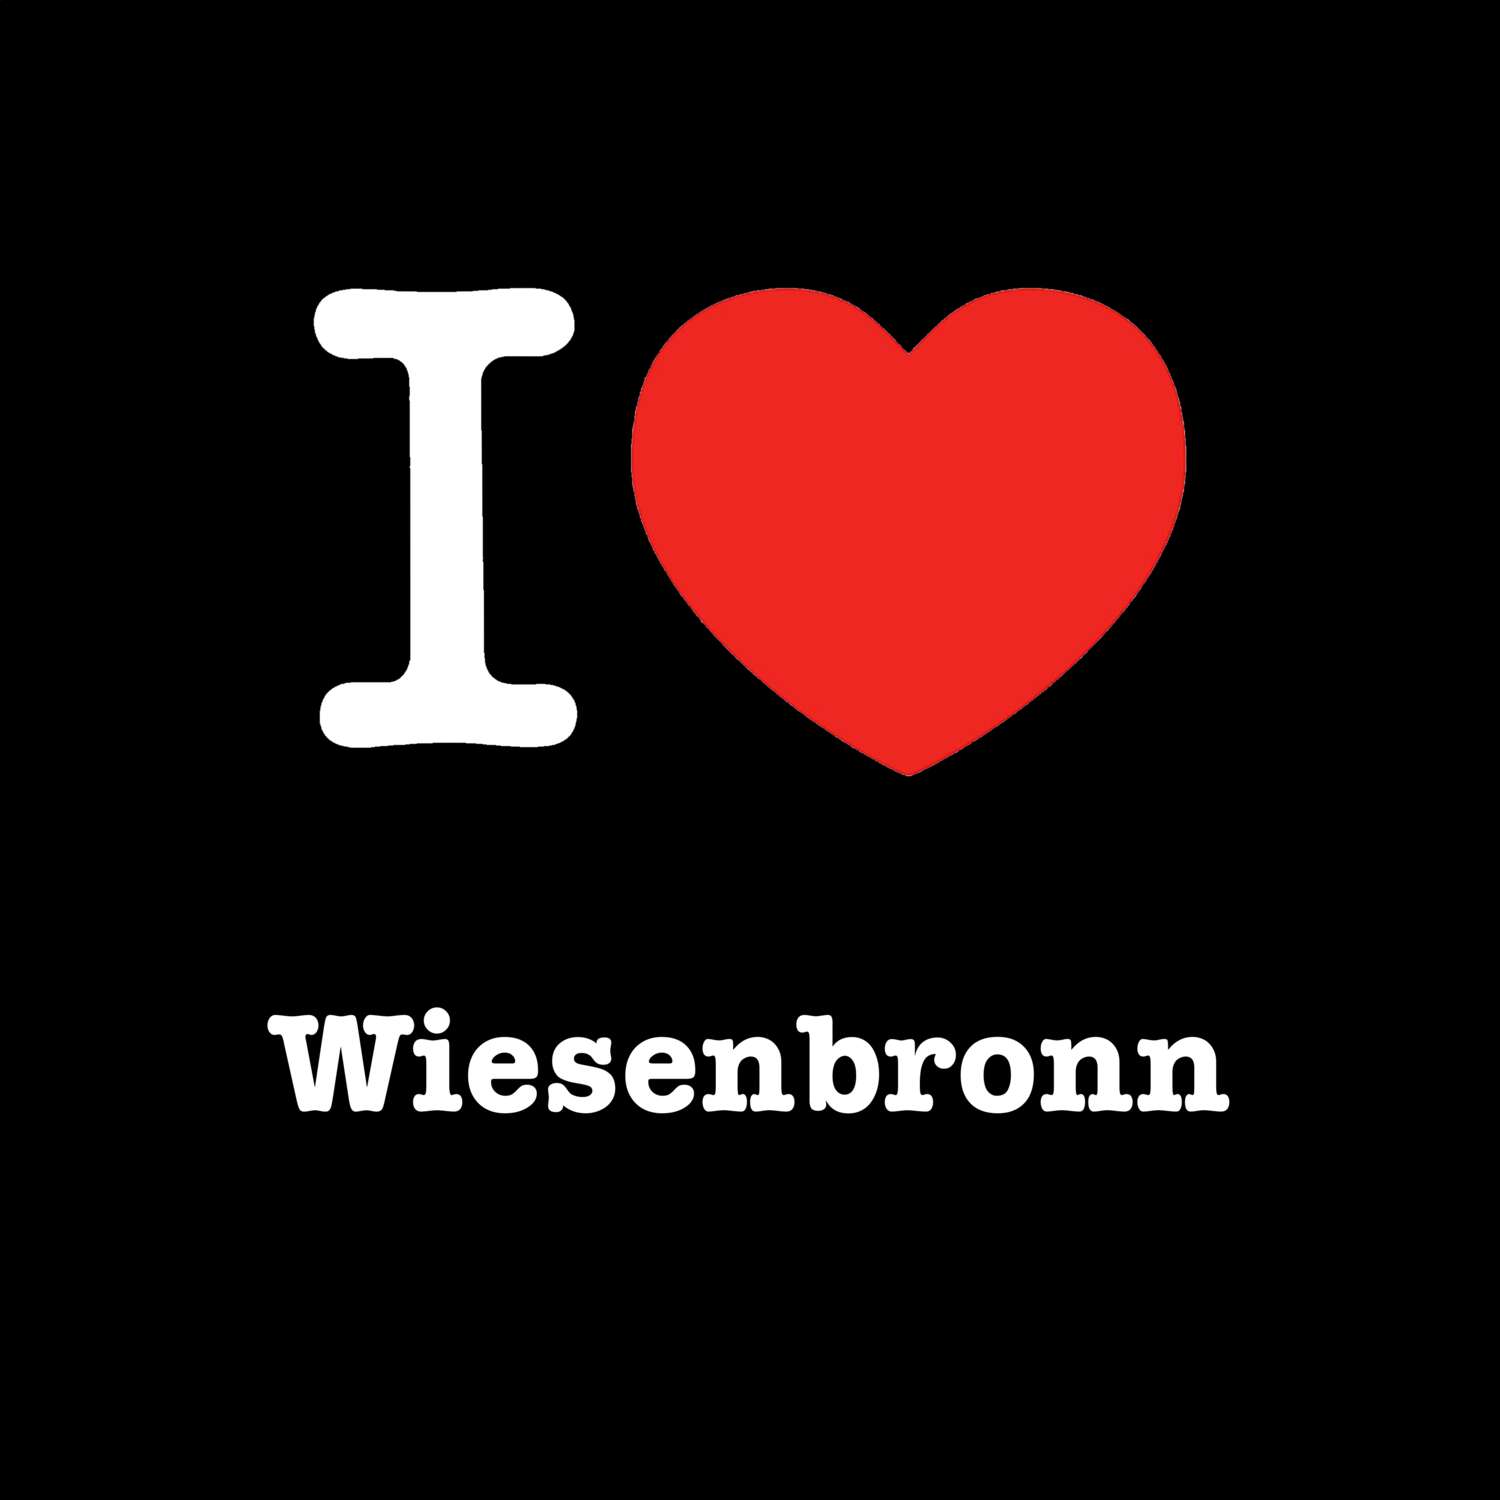 Wiesenbronn T-Shirt »I love«